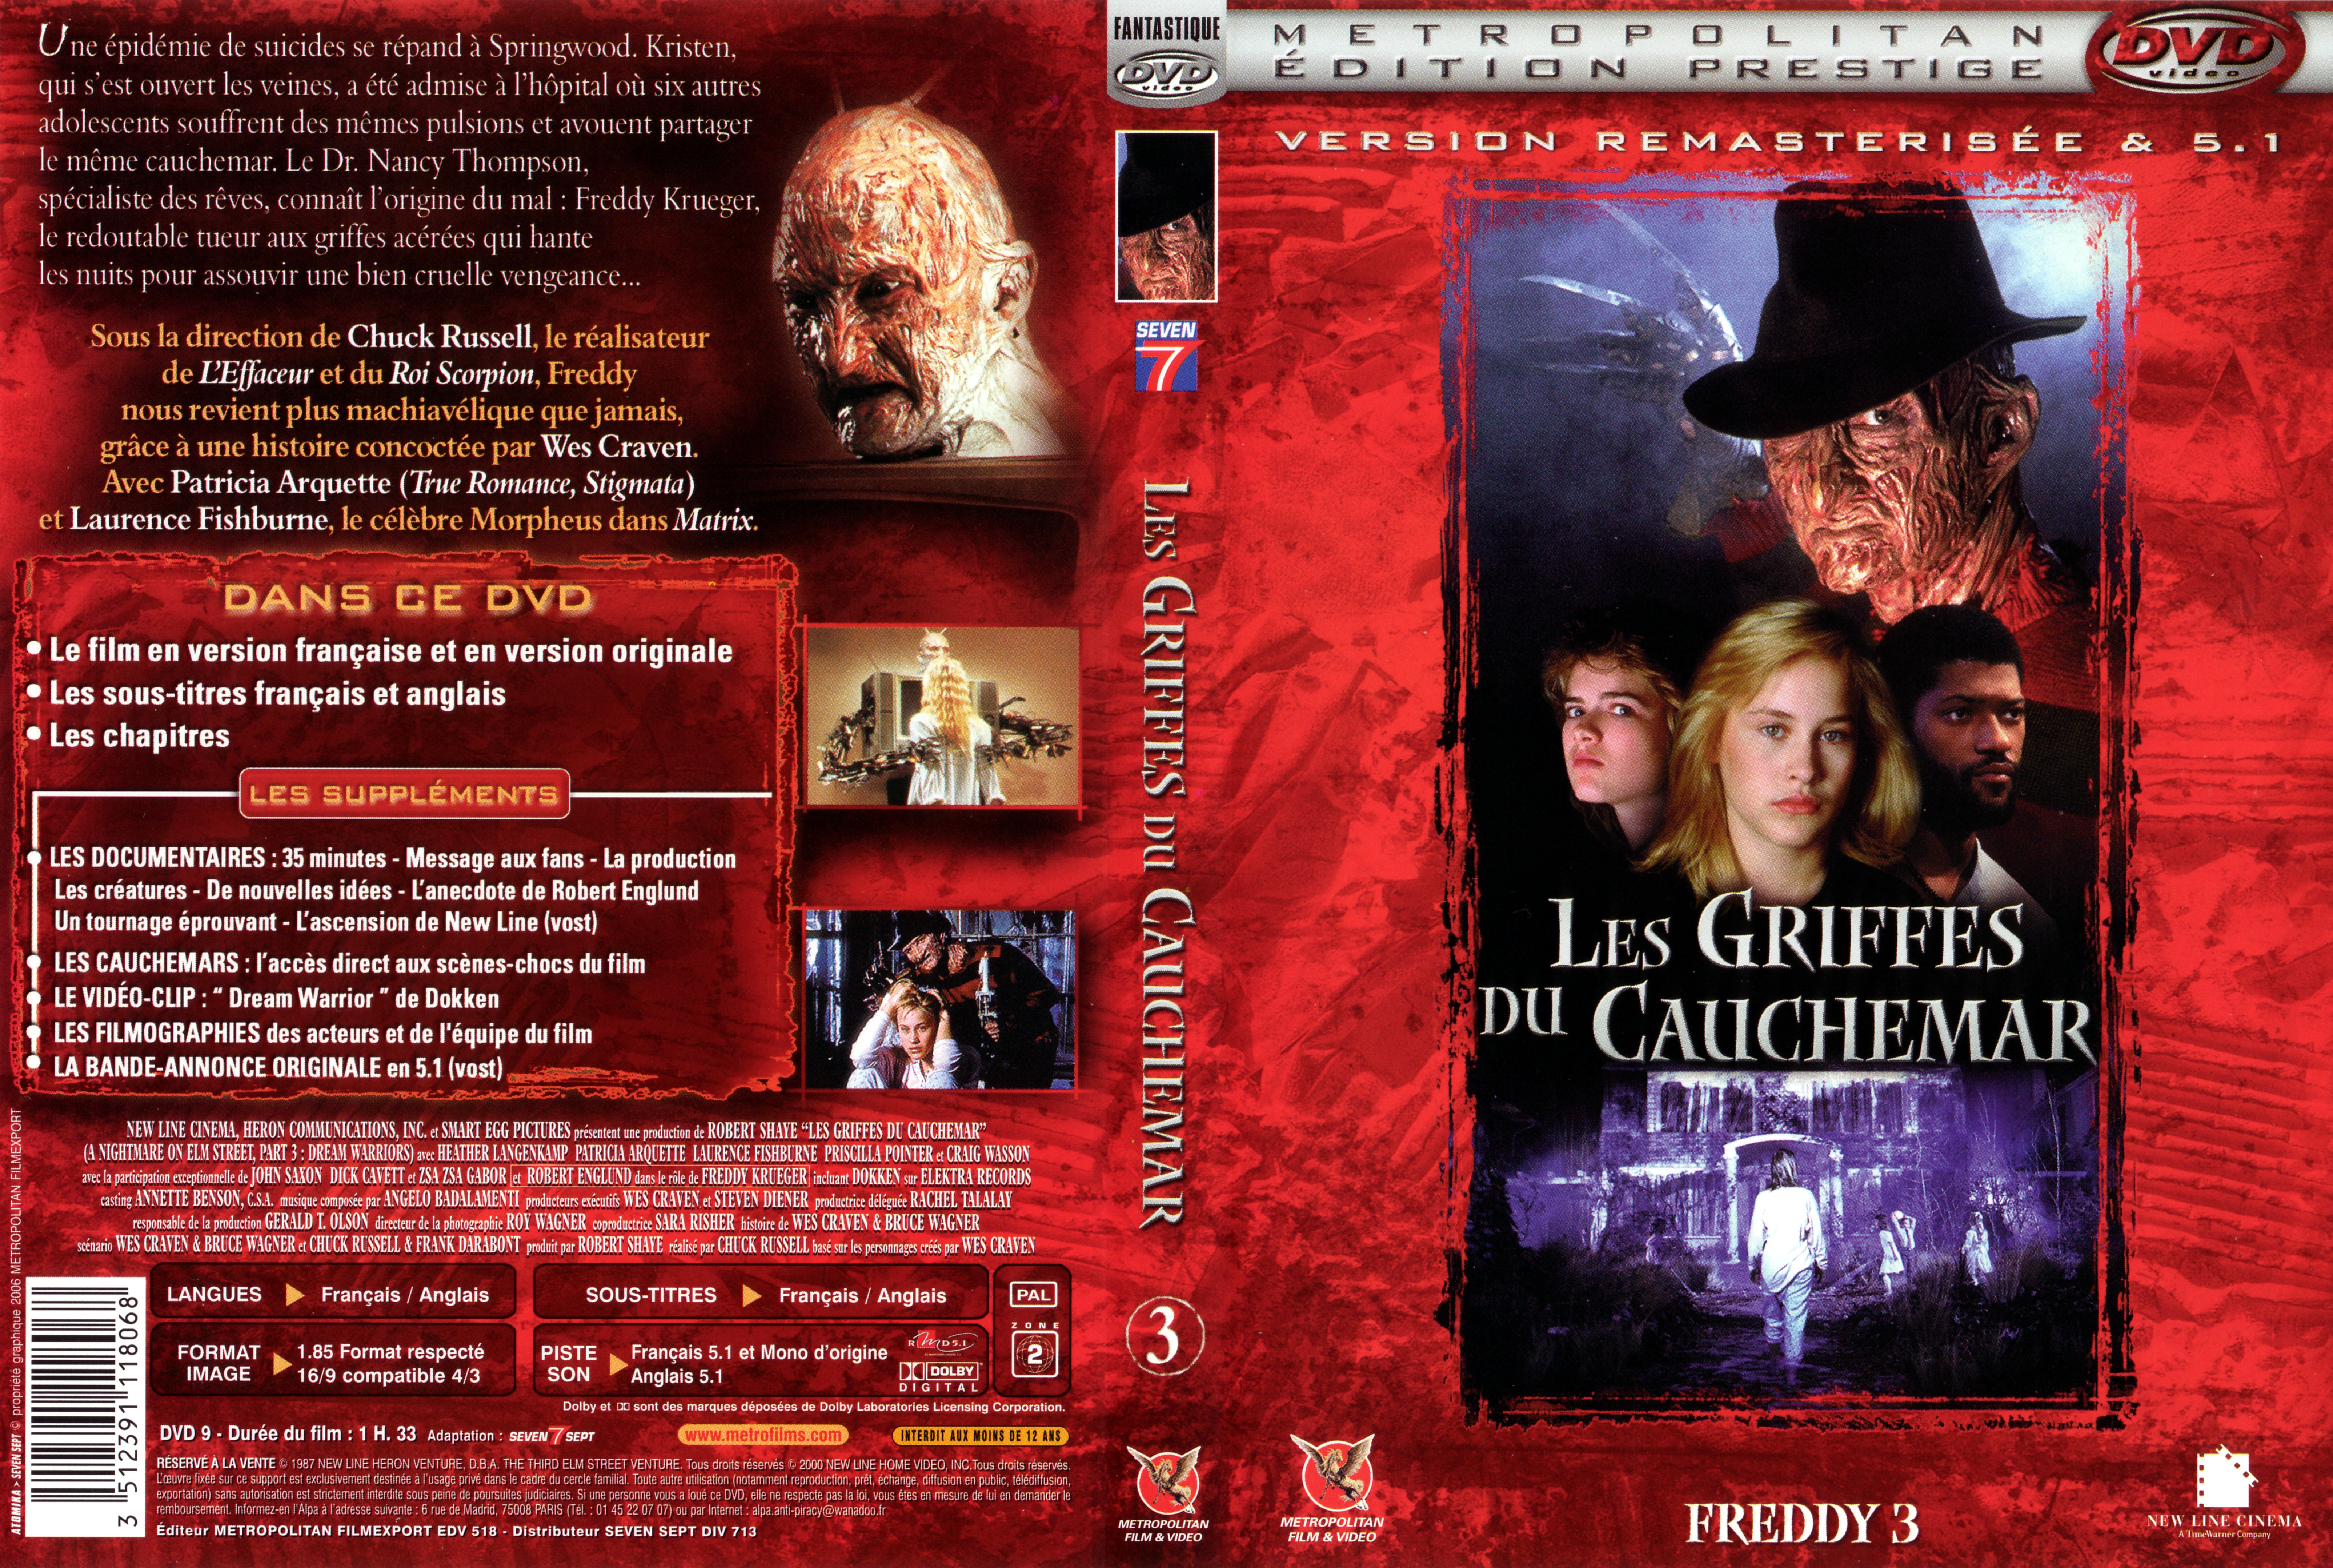 Jaquette DVD Freddy 3 Les griffes du cauchemar v2